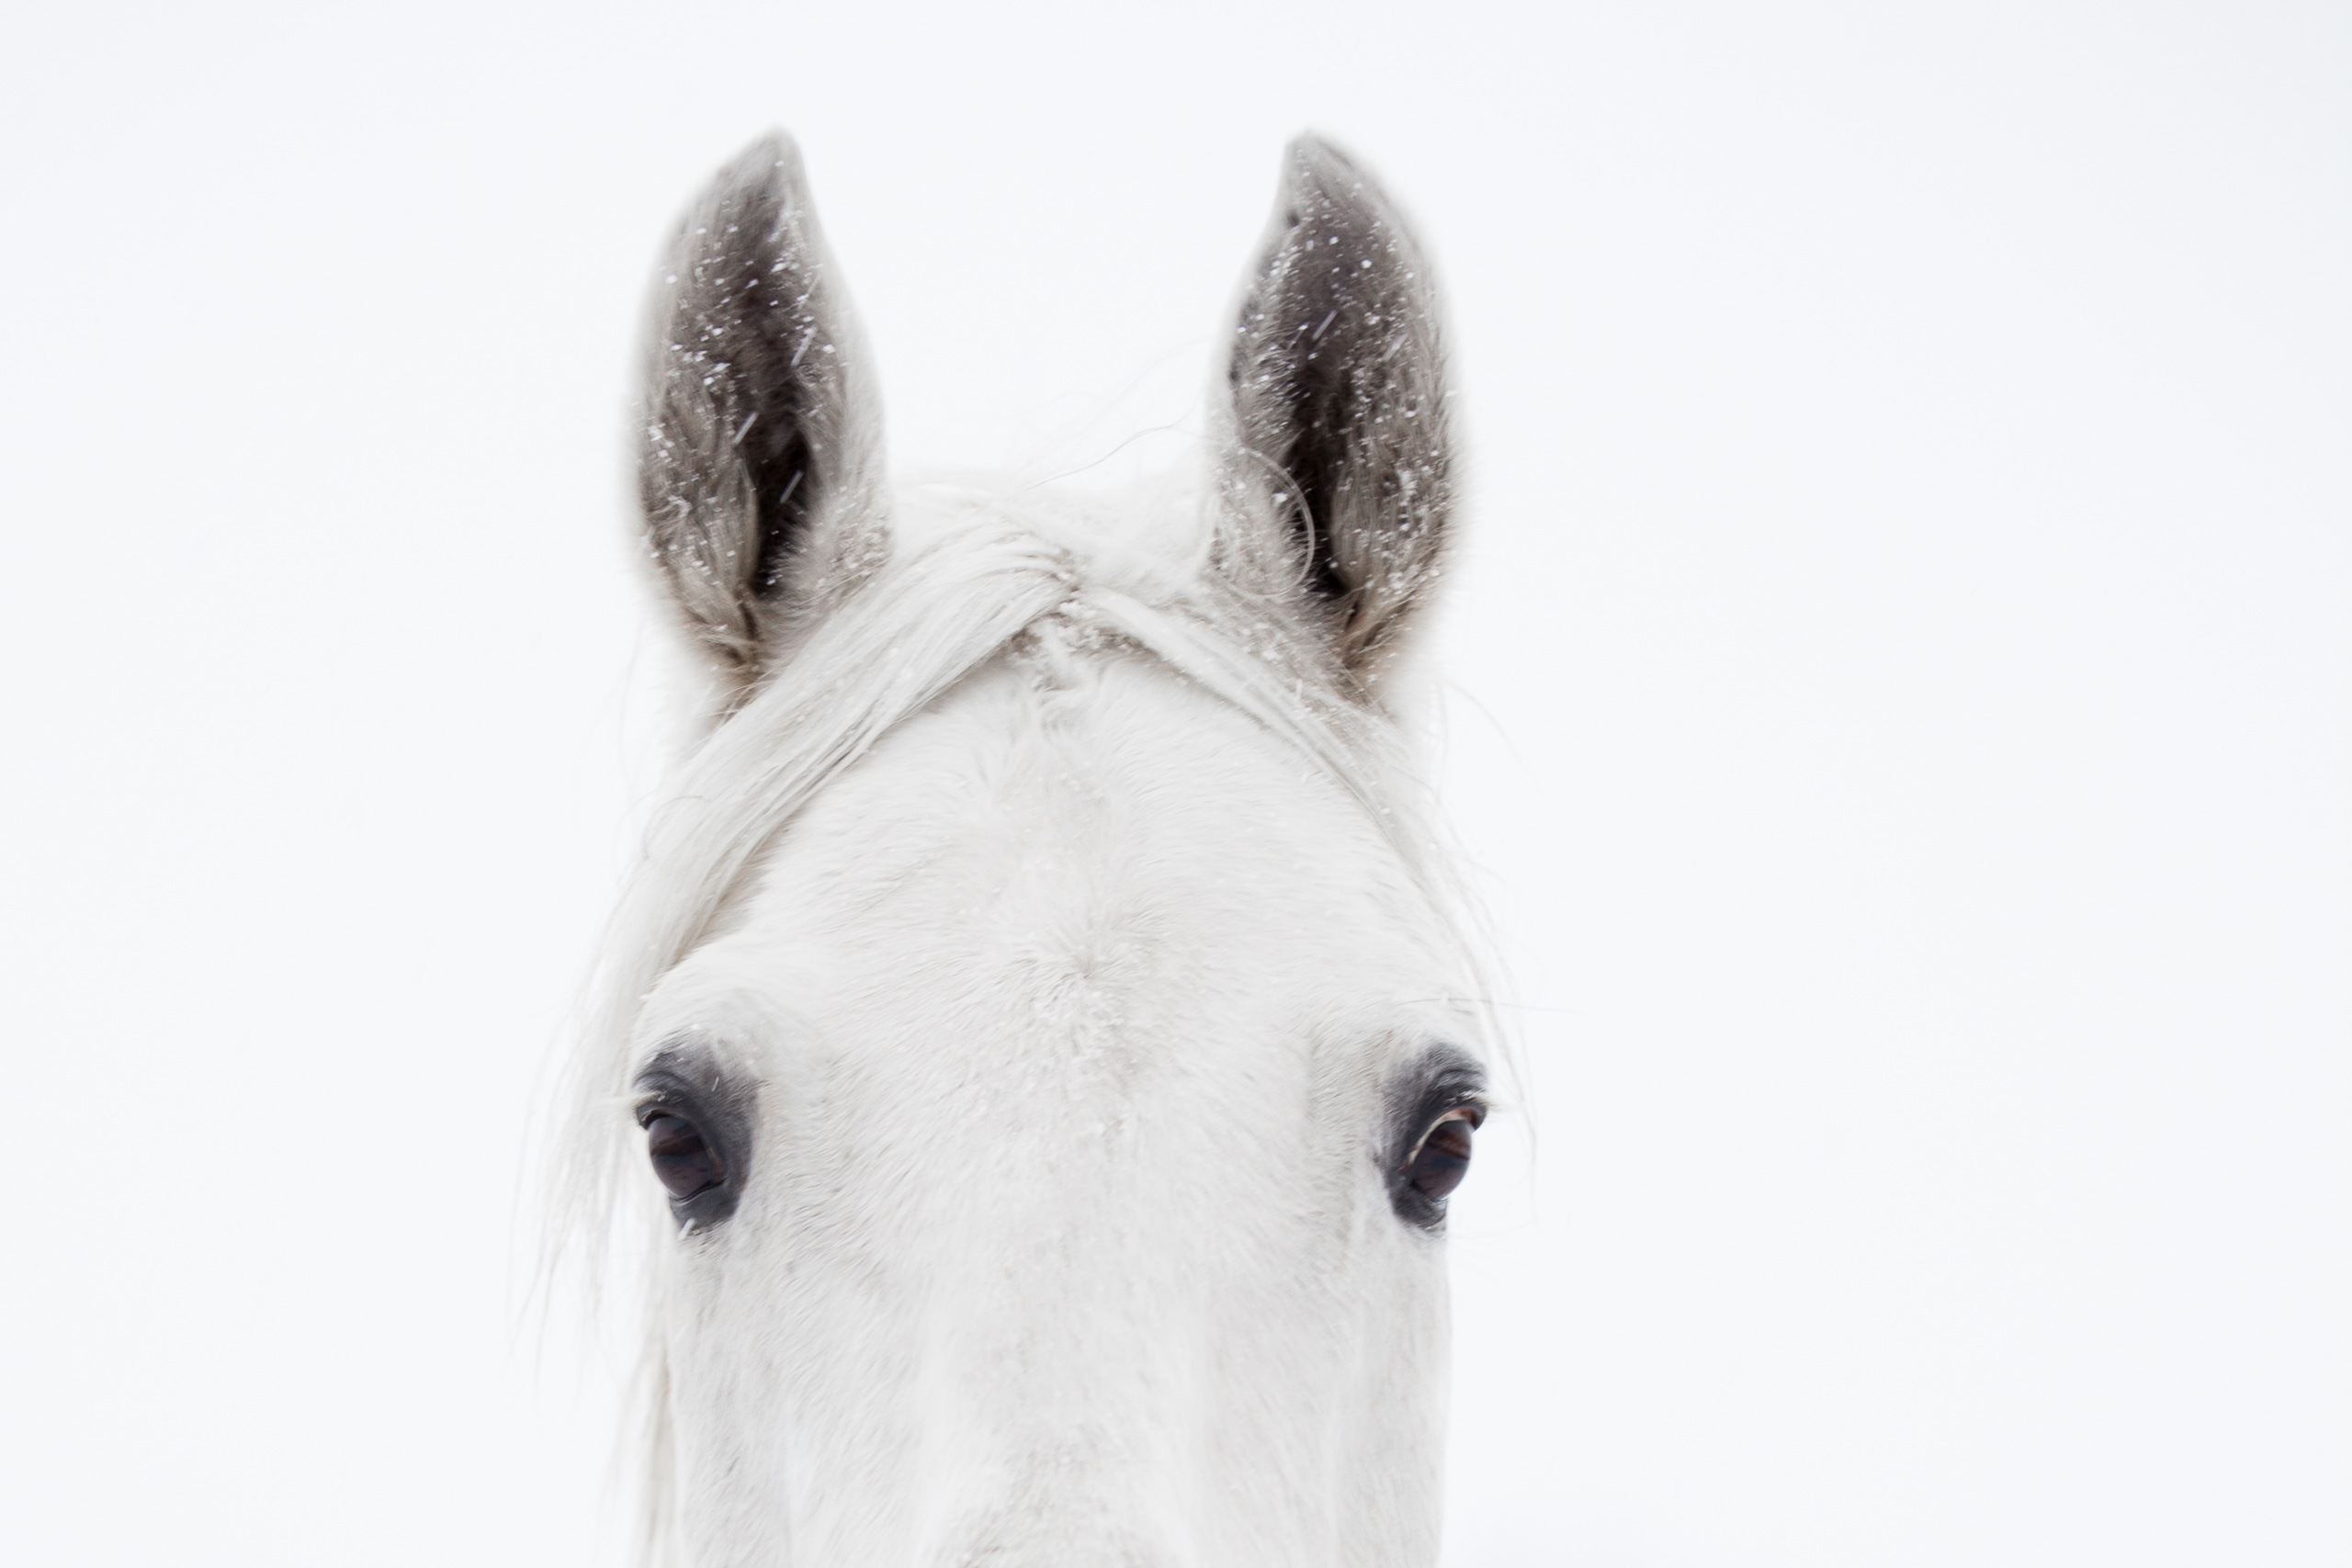 Pferde;Portfolio;Tierfotografie;lumo obscura;outdoor